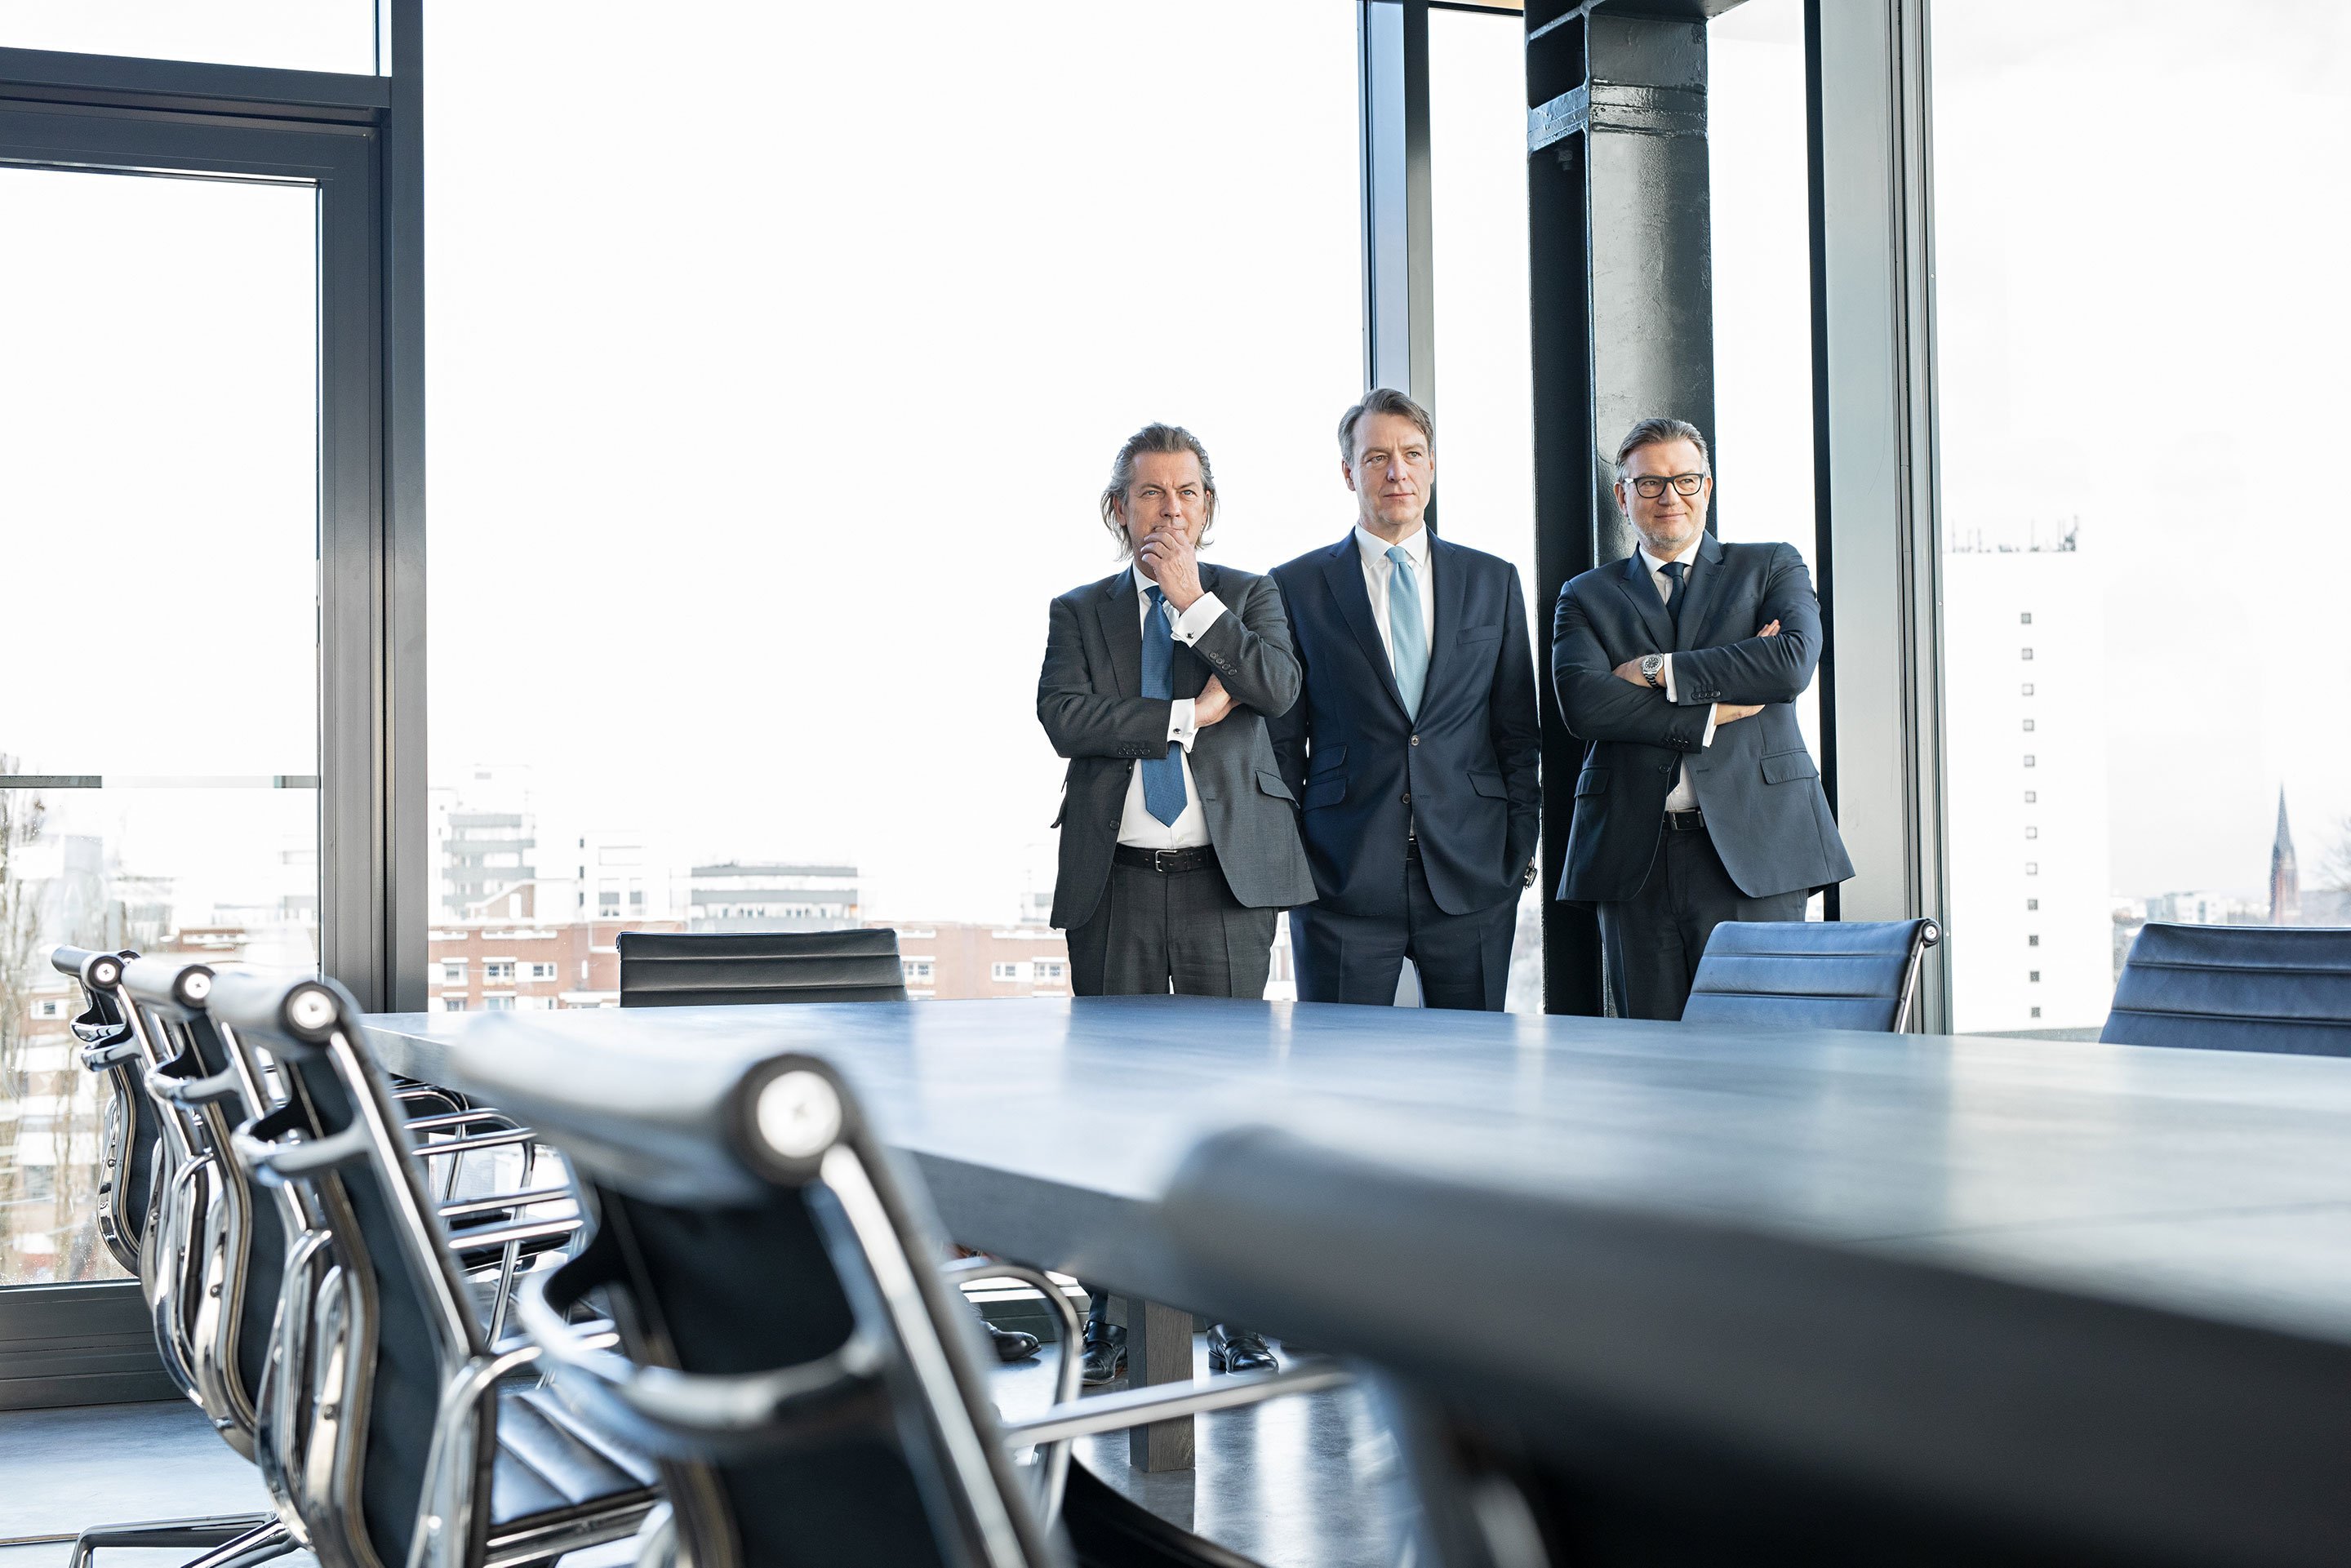 Geschäftsführung der Paribus Holding GmbH & Co. KG, von links: Dr. Christopher Schroeder (geschäftsführender Gesellschafter), Dr. Volker Simmering und Thomas Böcher